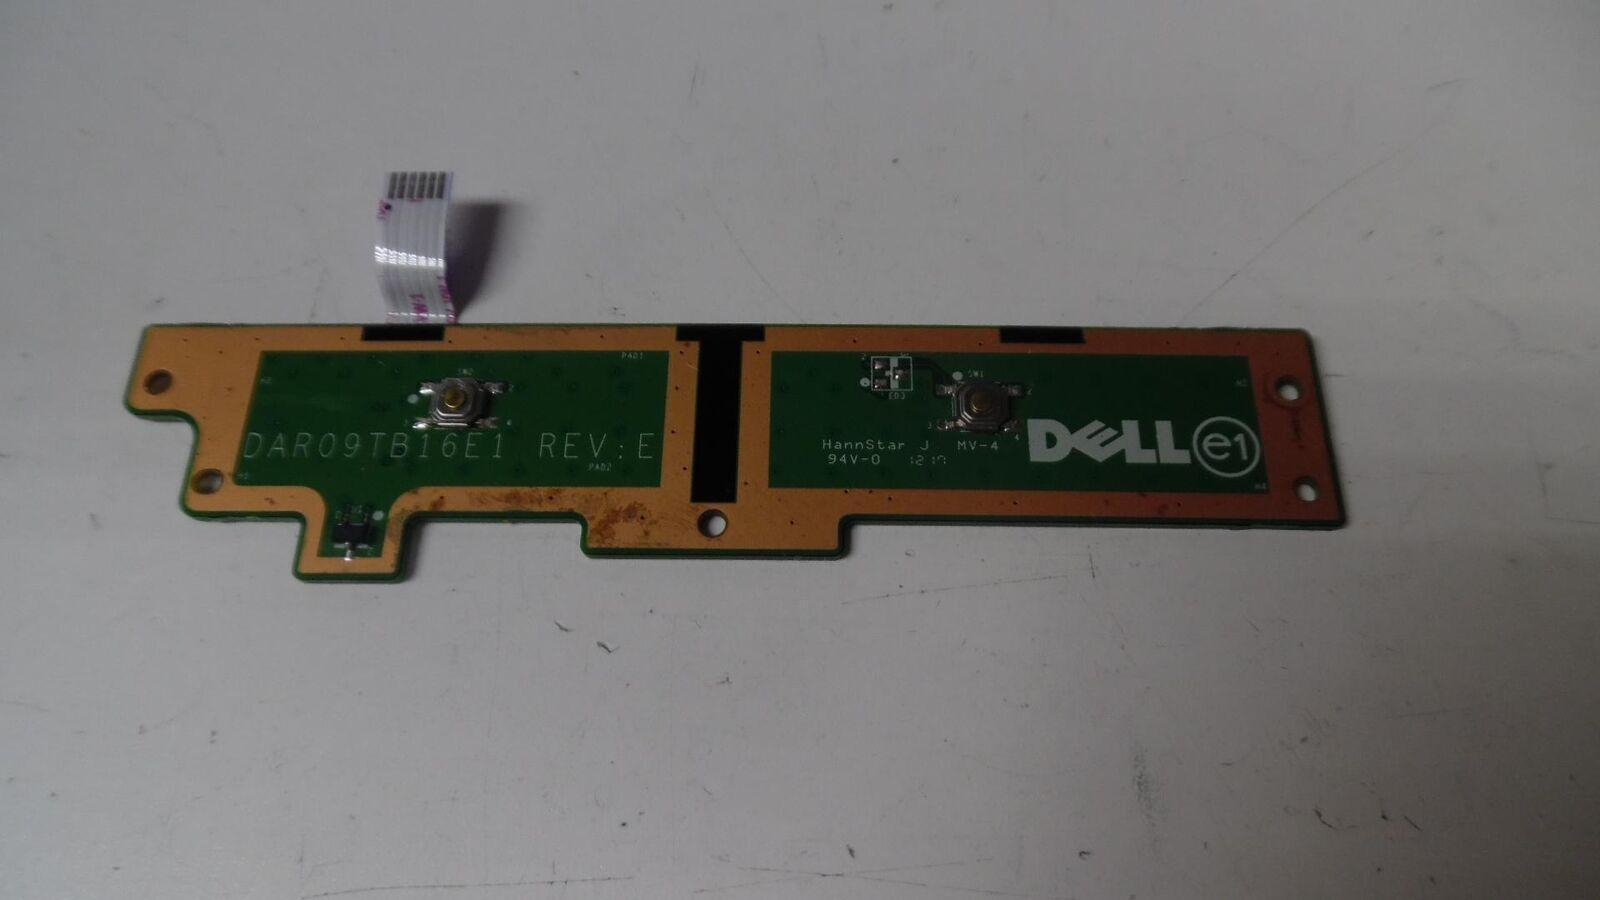 Genuine Dell inspiron 17R 7720 - Touchpad Button Board w/ Ribbon - DAR09TB16E1